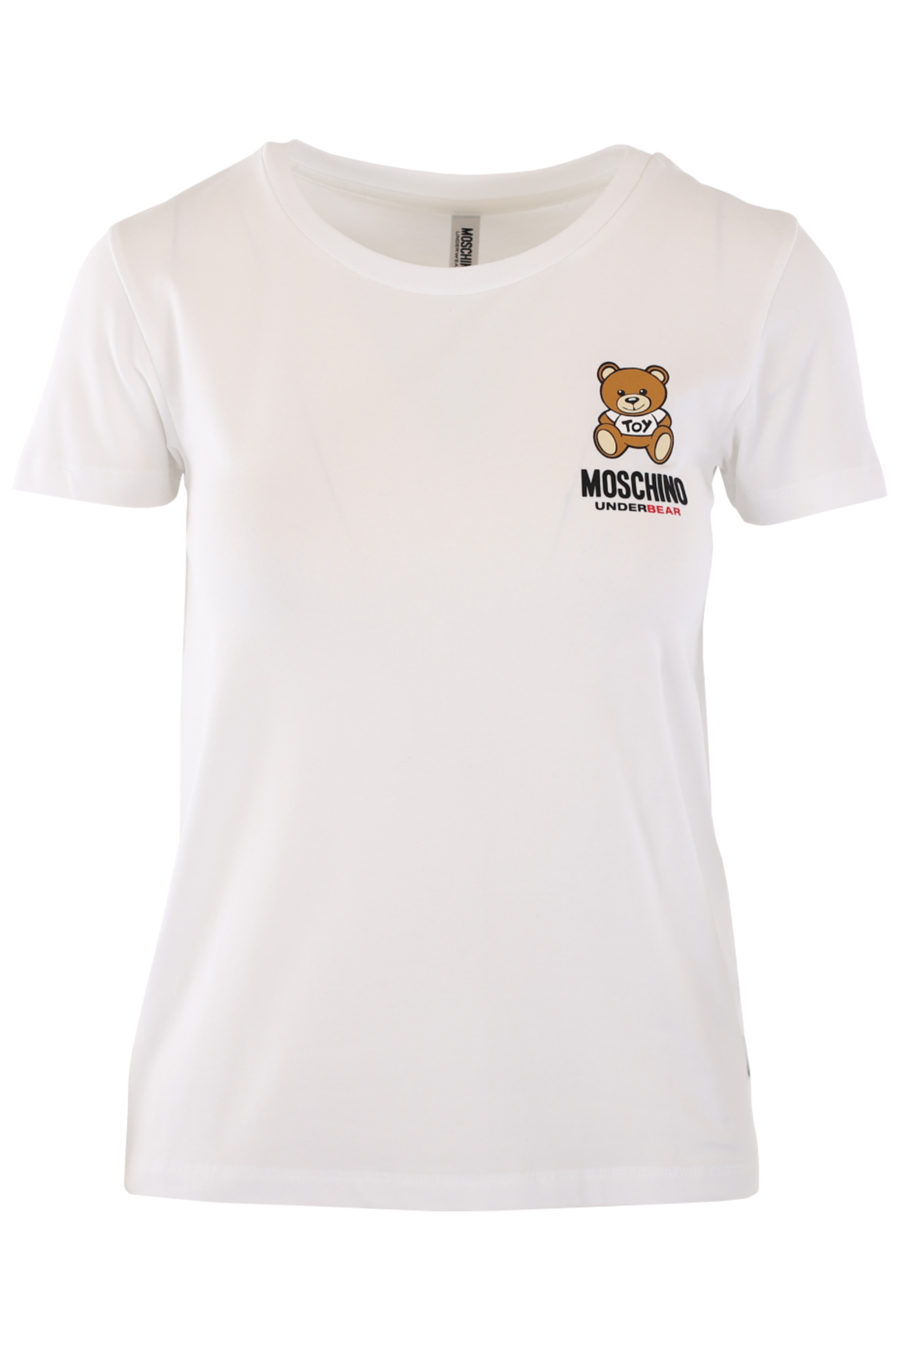 Camiseta blanca con logo oso "underbear" - IMG 0757